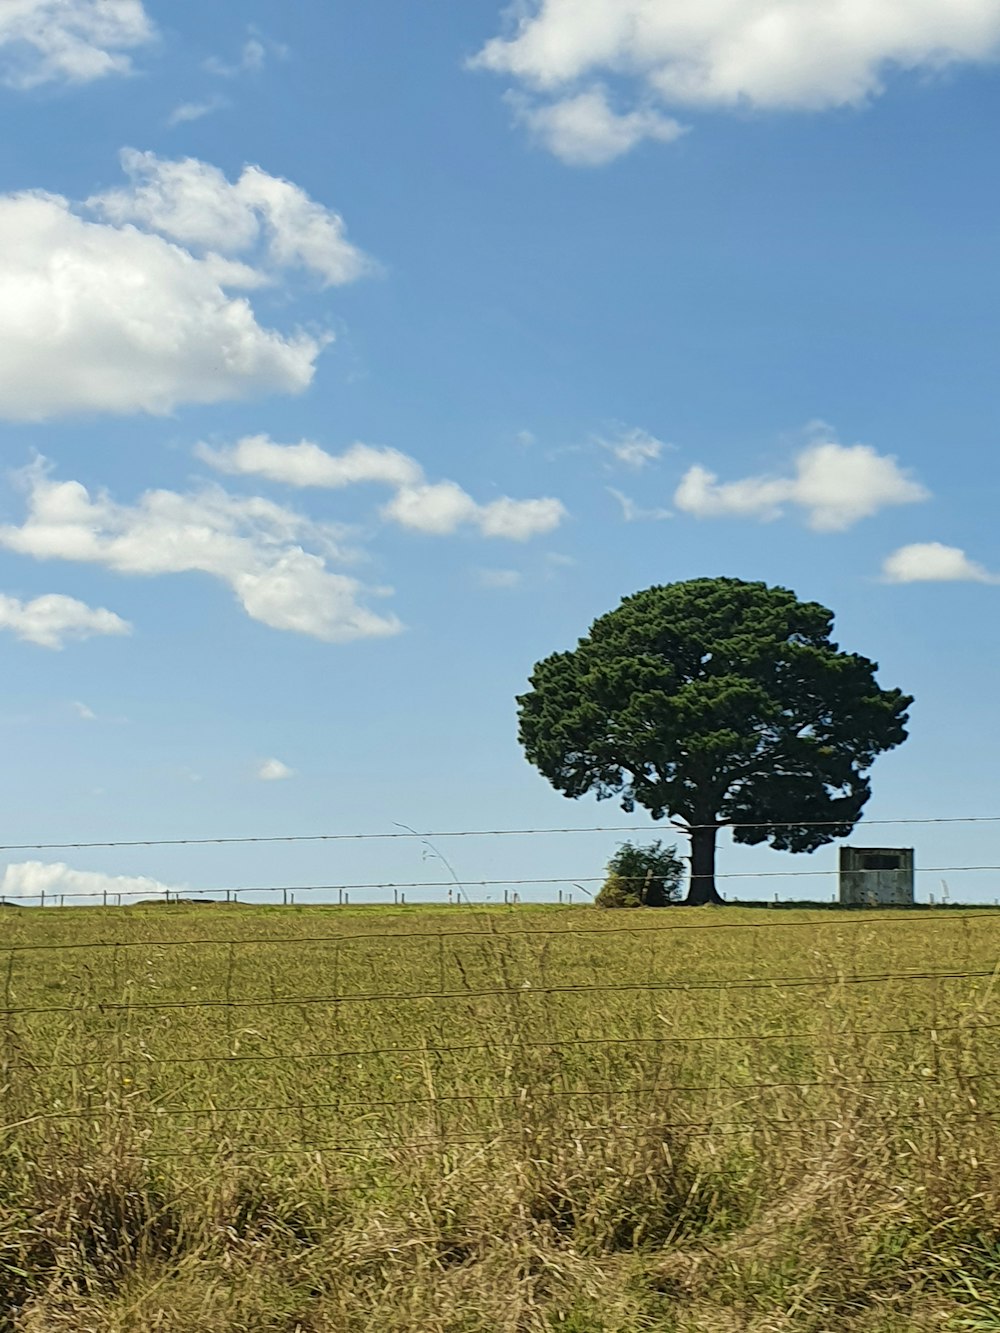 albero verde nel mezzo del campo di erba marrone sotto il cielo blu durante il giorno